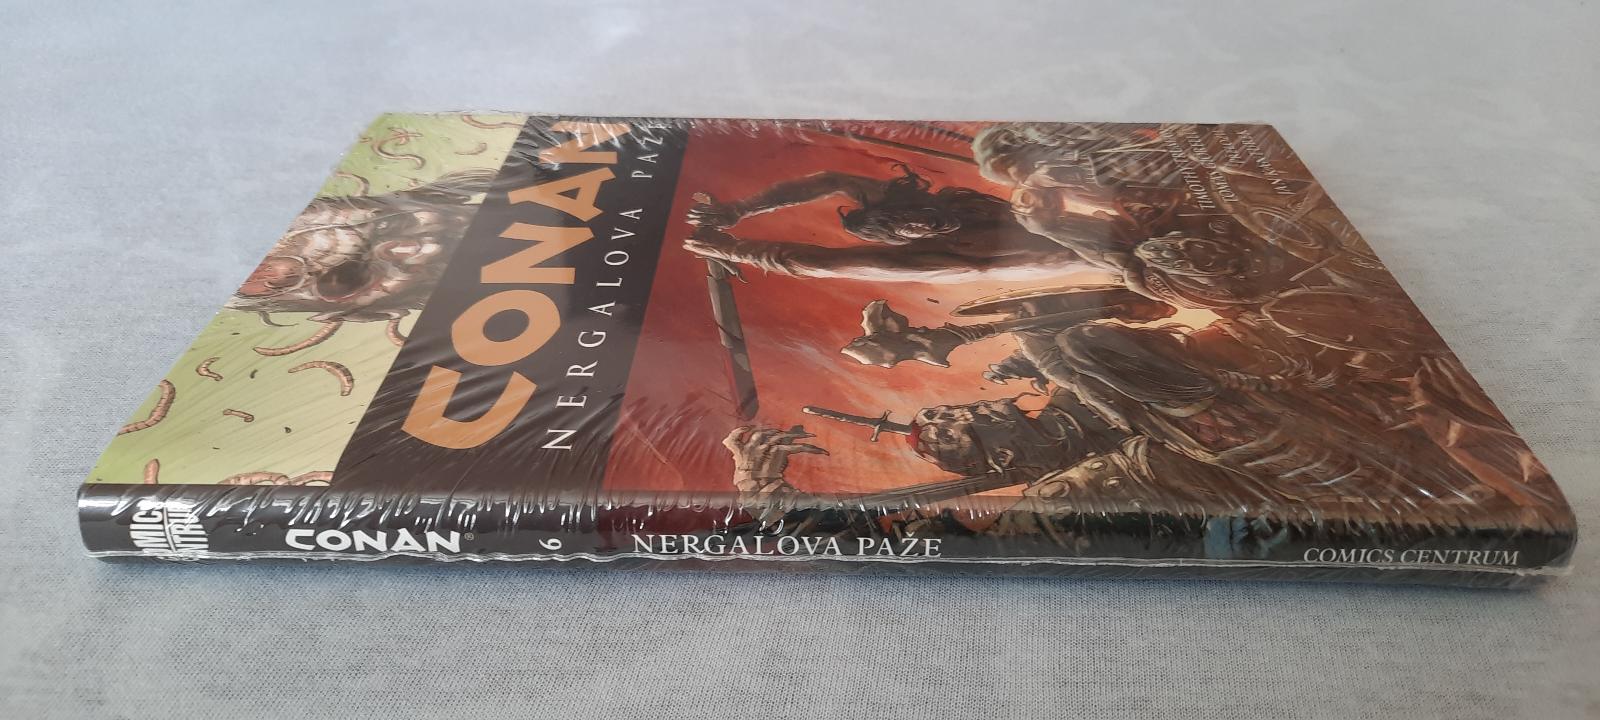 Conan 6. - Nergalova paže - Knihy a časopisy